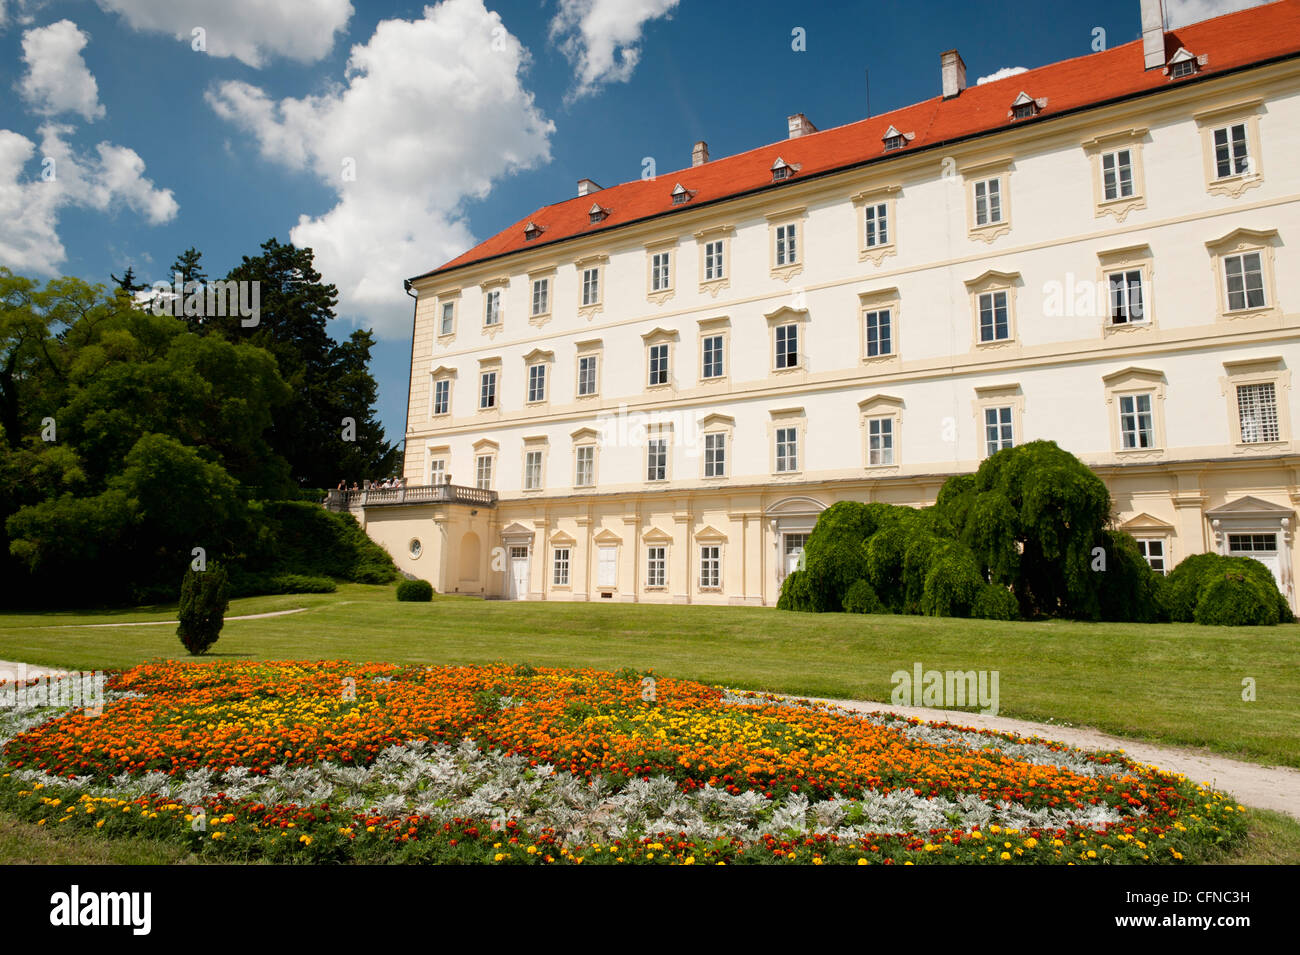 Valtice barocco Castello con decorazioni floreali nei suoi giardini, Valtice, Brnensko, Repubblica Ceca, Europa Foto Stock